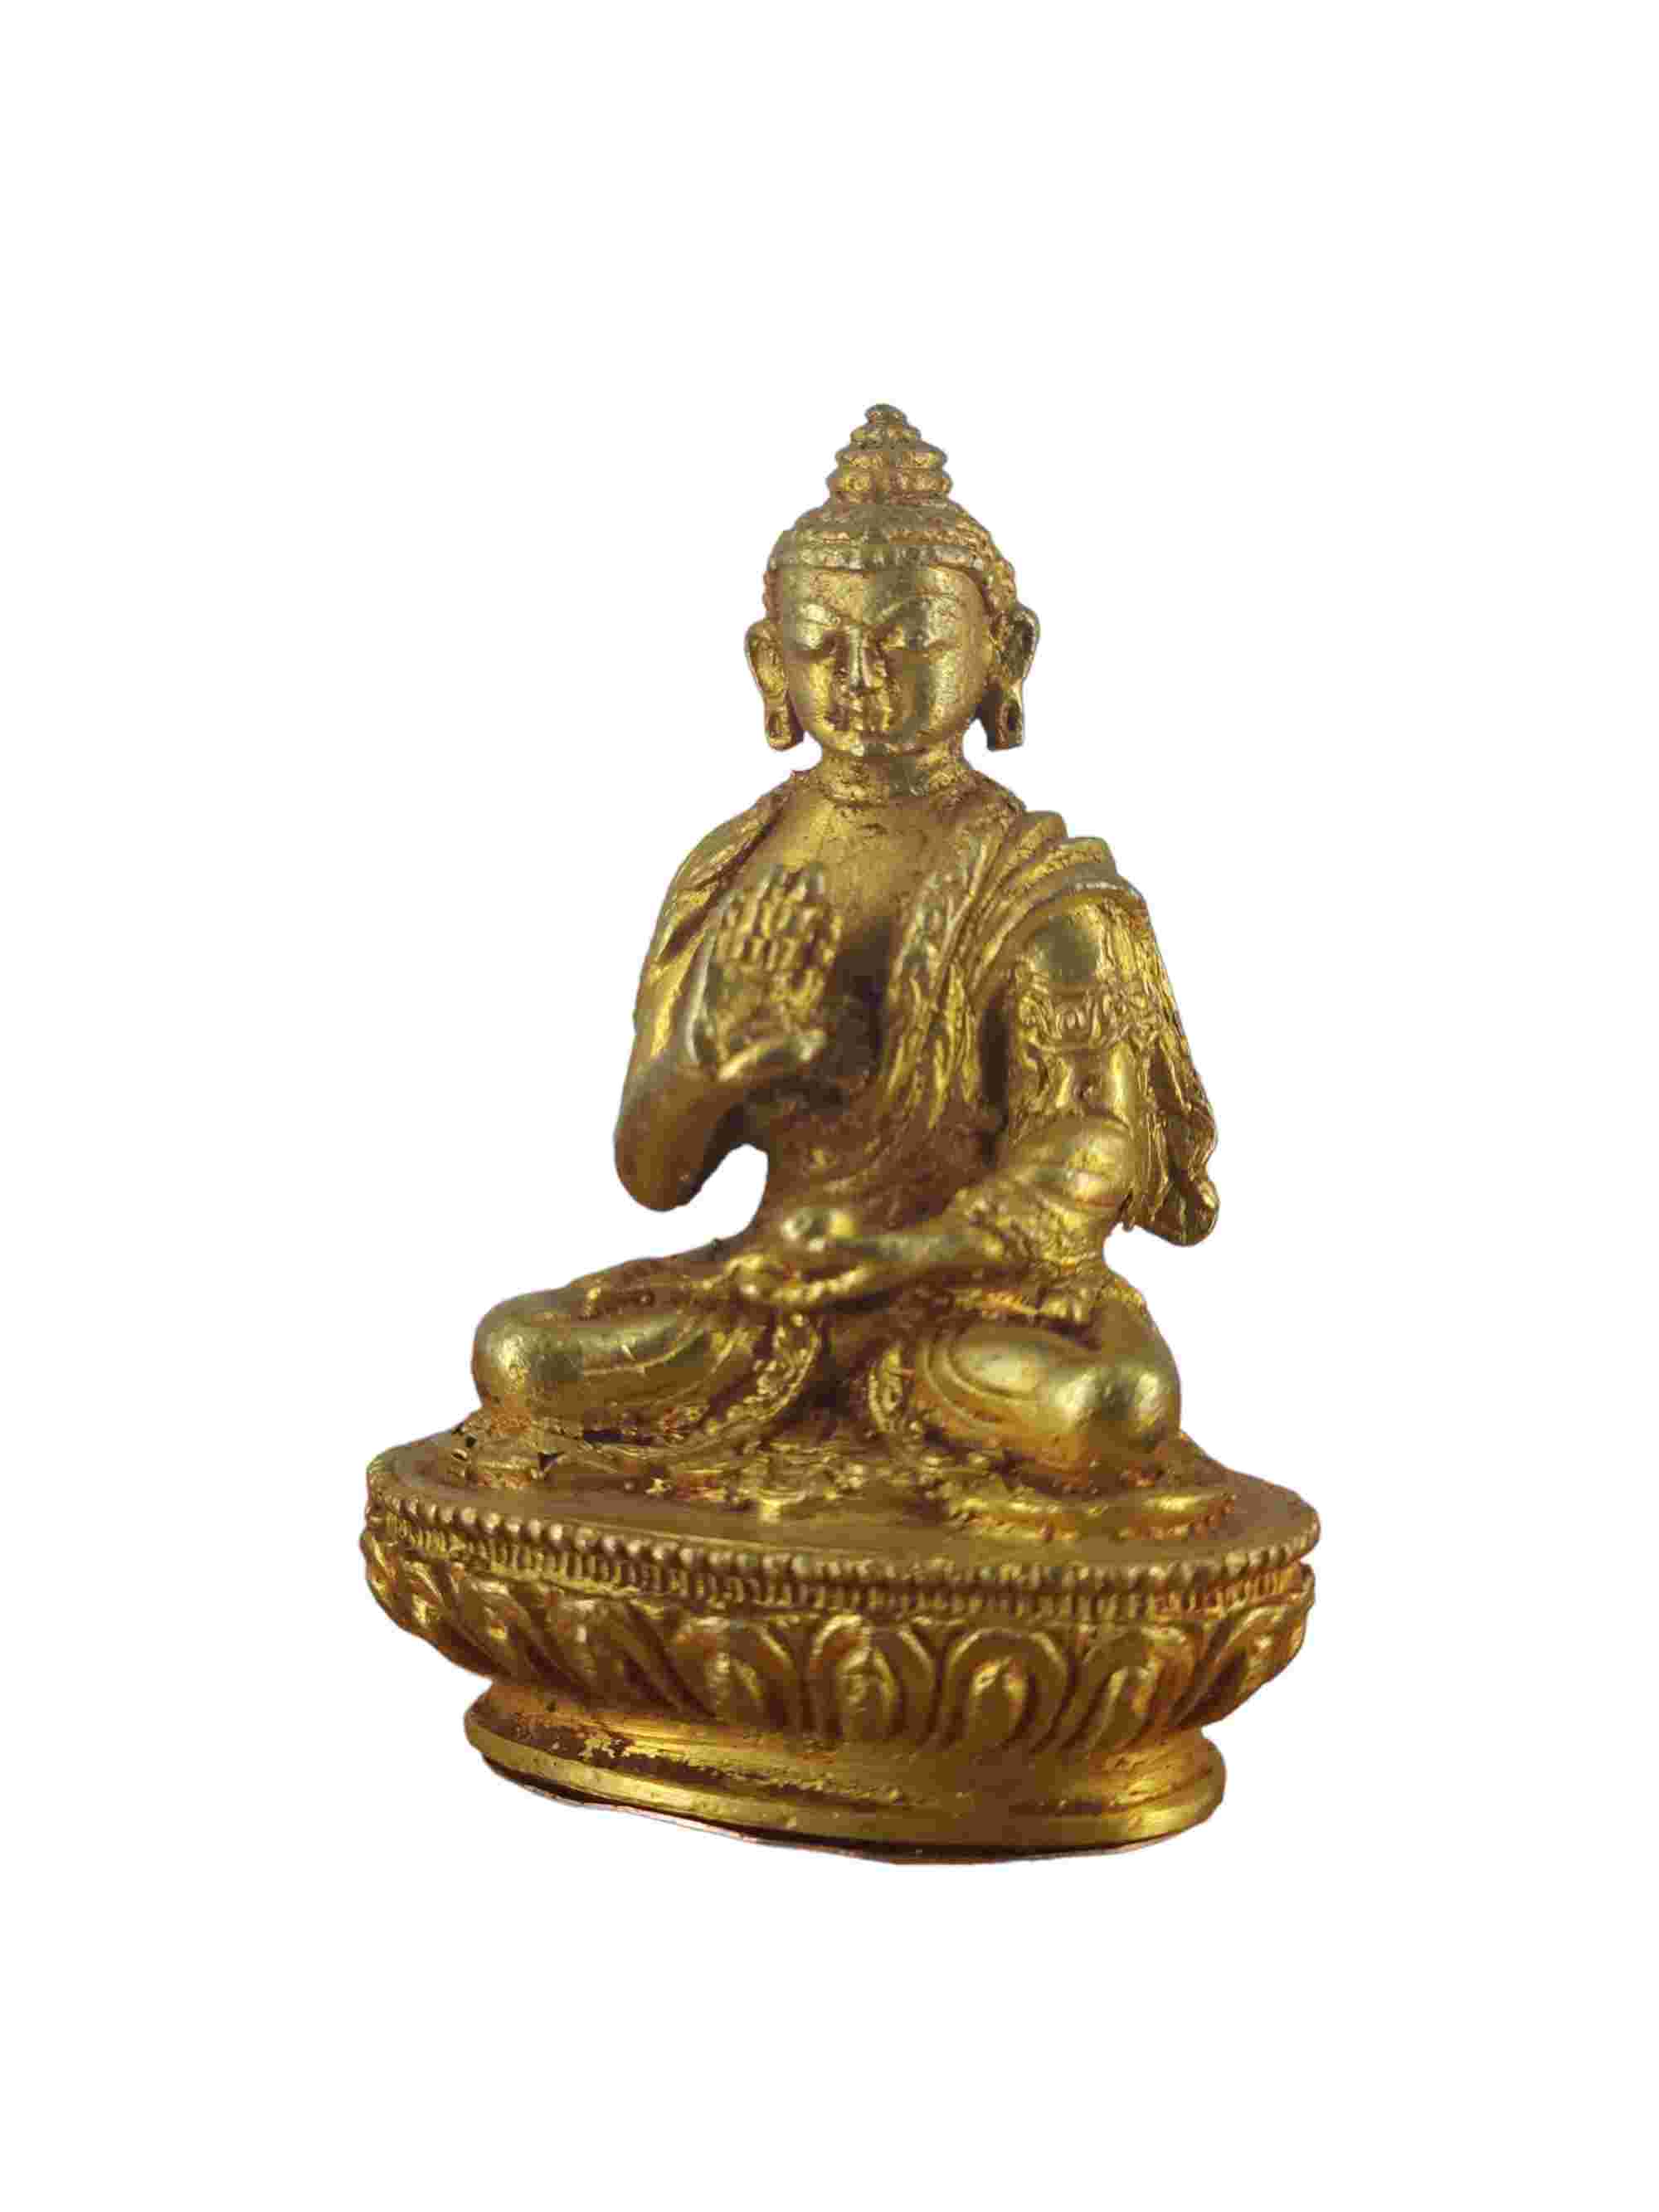 Buddhist Miniature Statue Of Amoghasiddhi Buddha, gold Plated